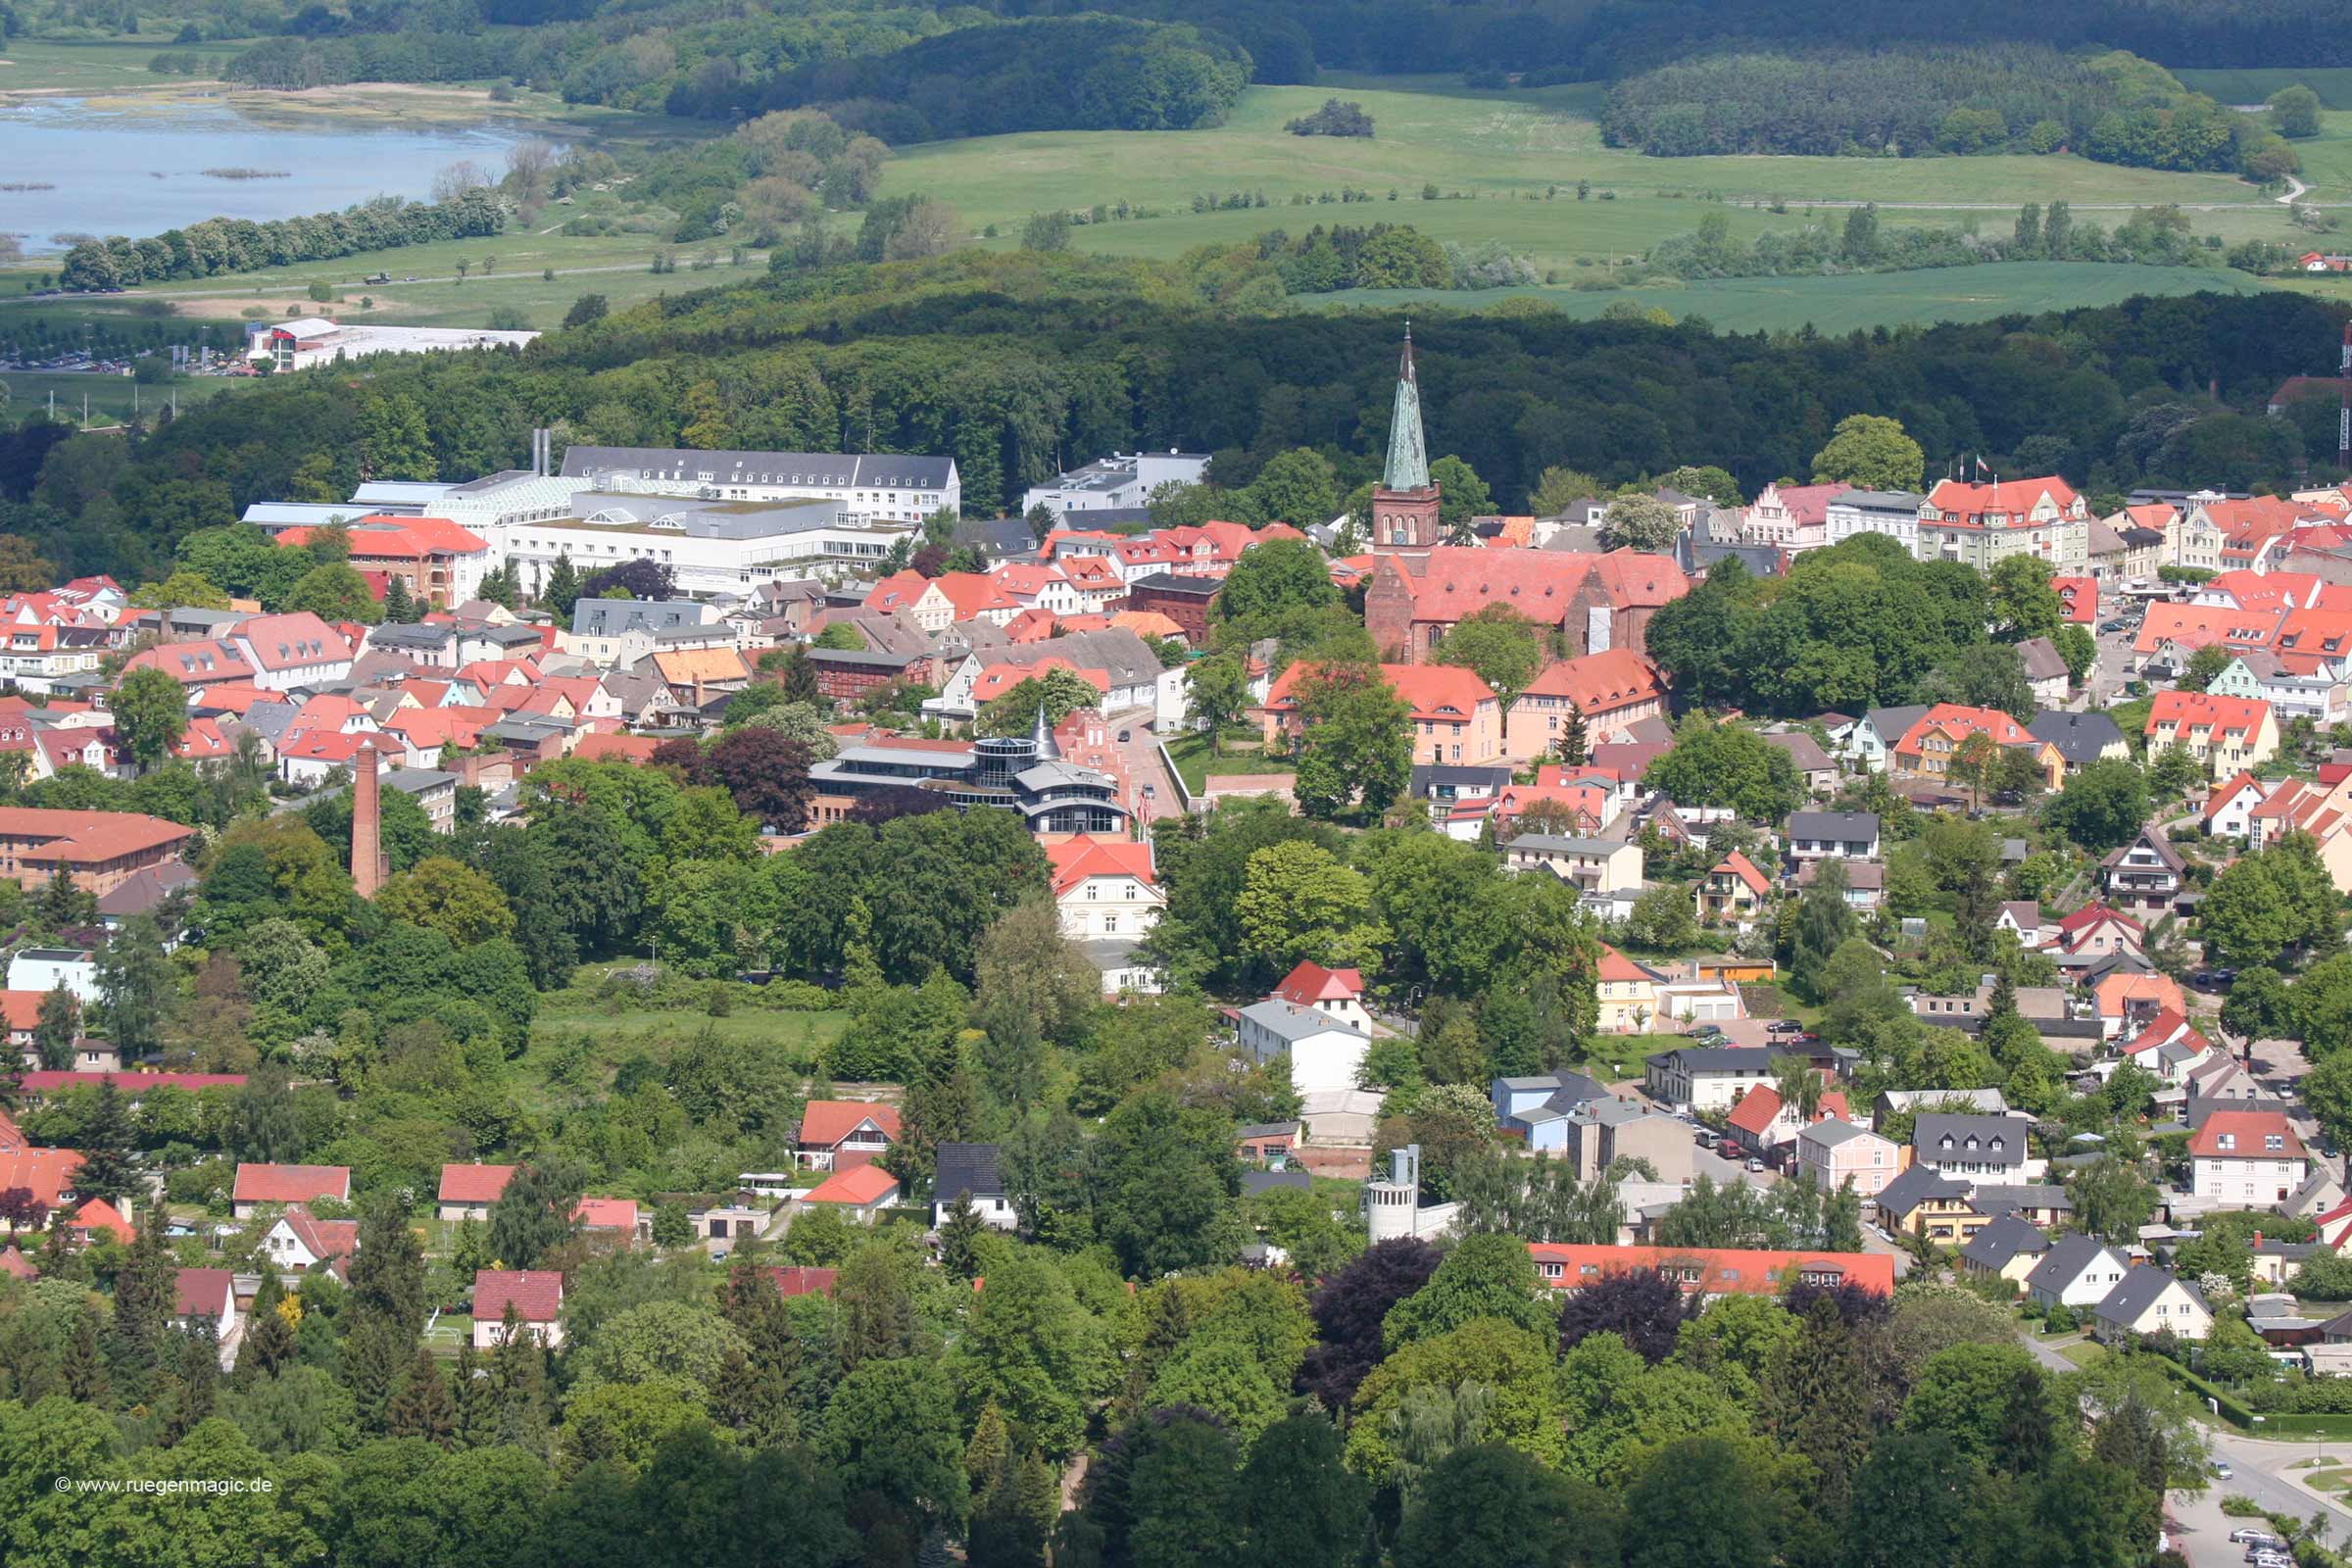 Luftaufnahme von Bergen auf Rügen